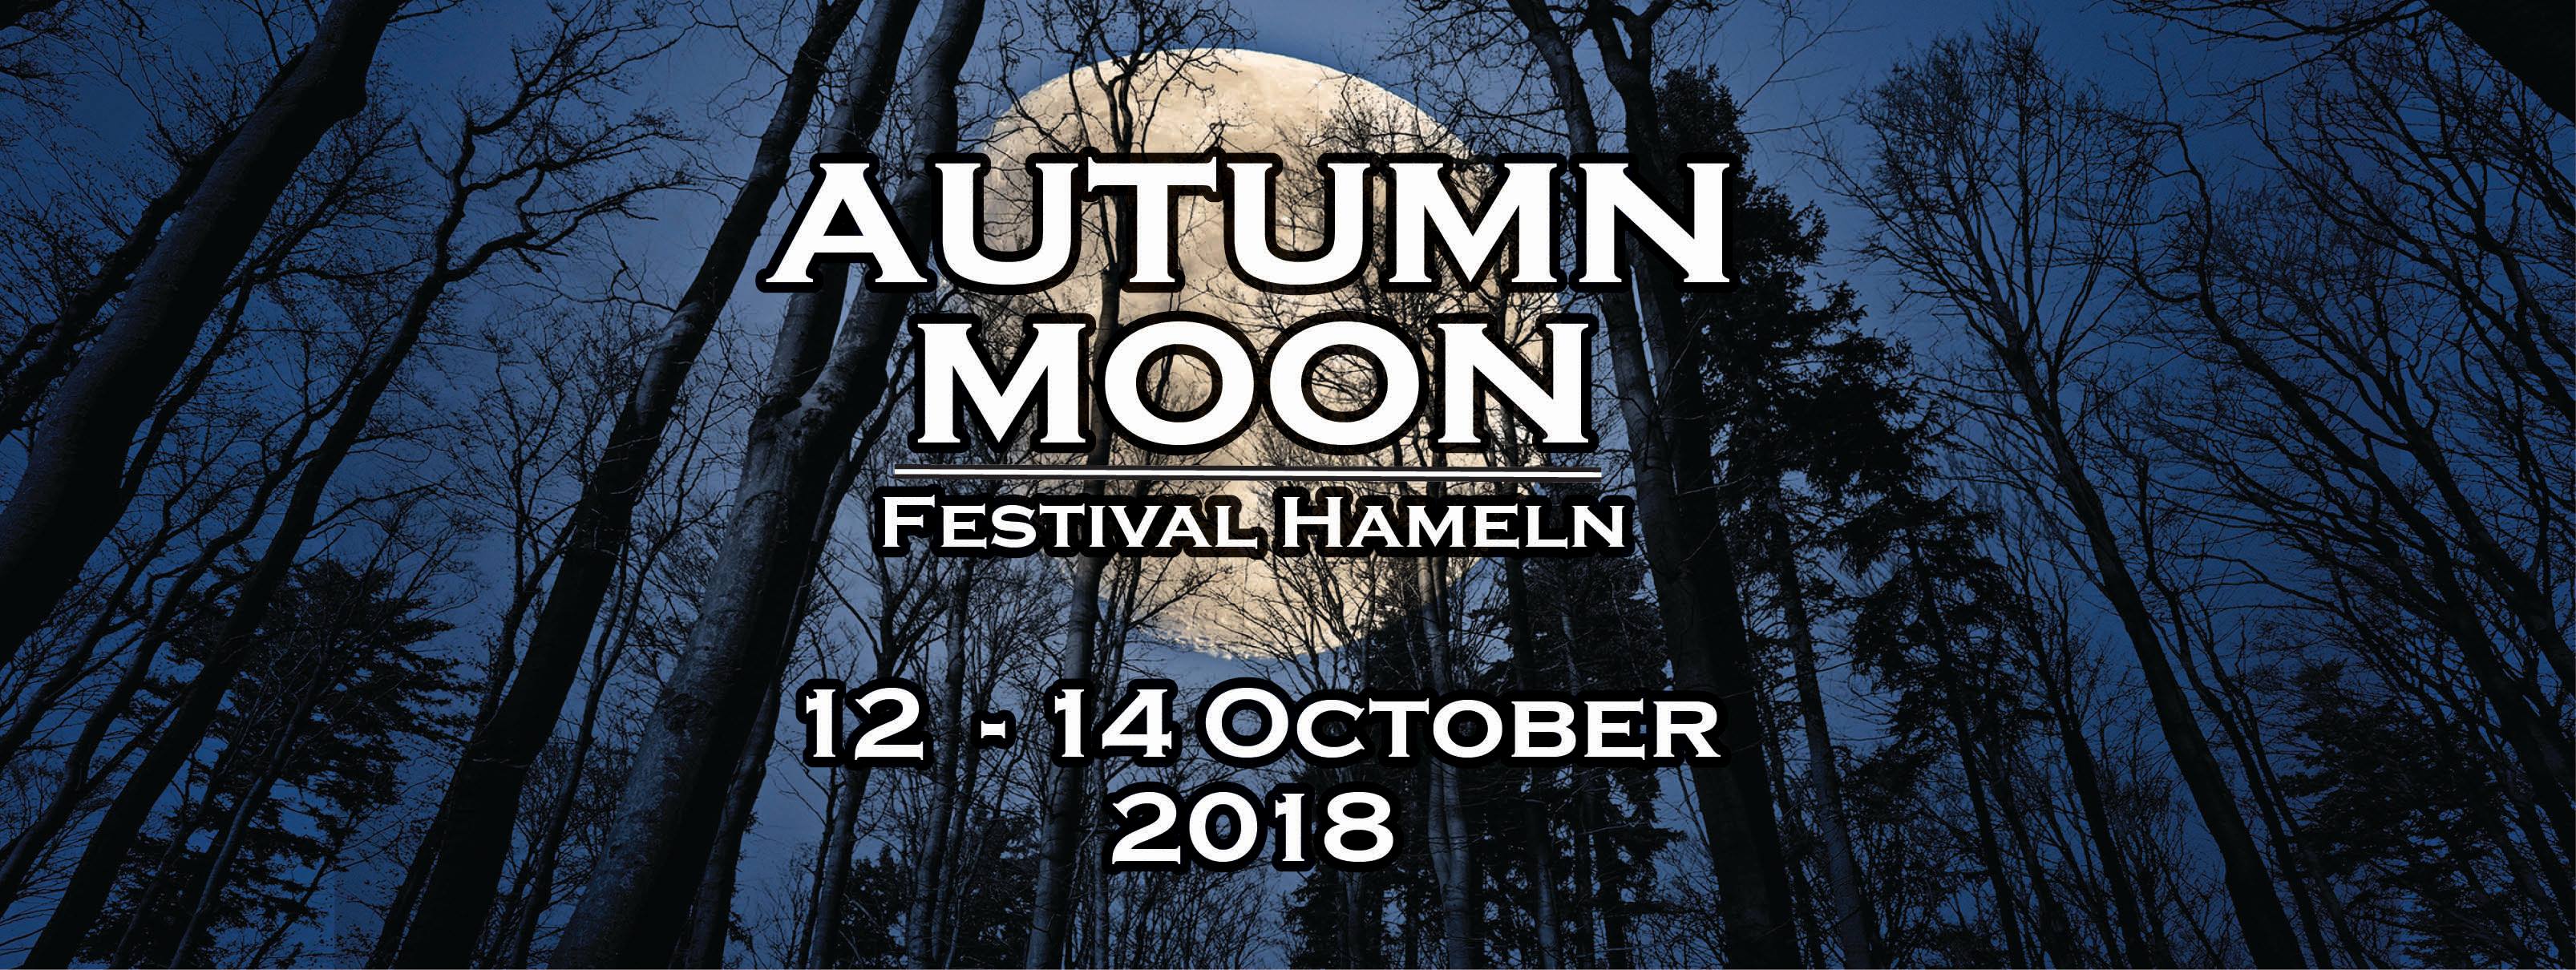 Autumn Moon Festival 2018